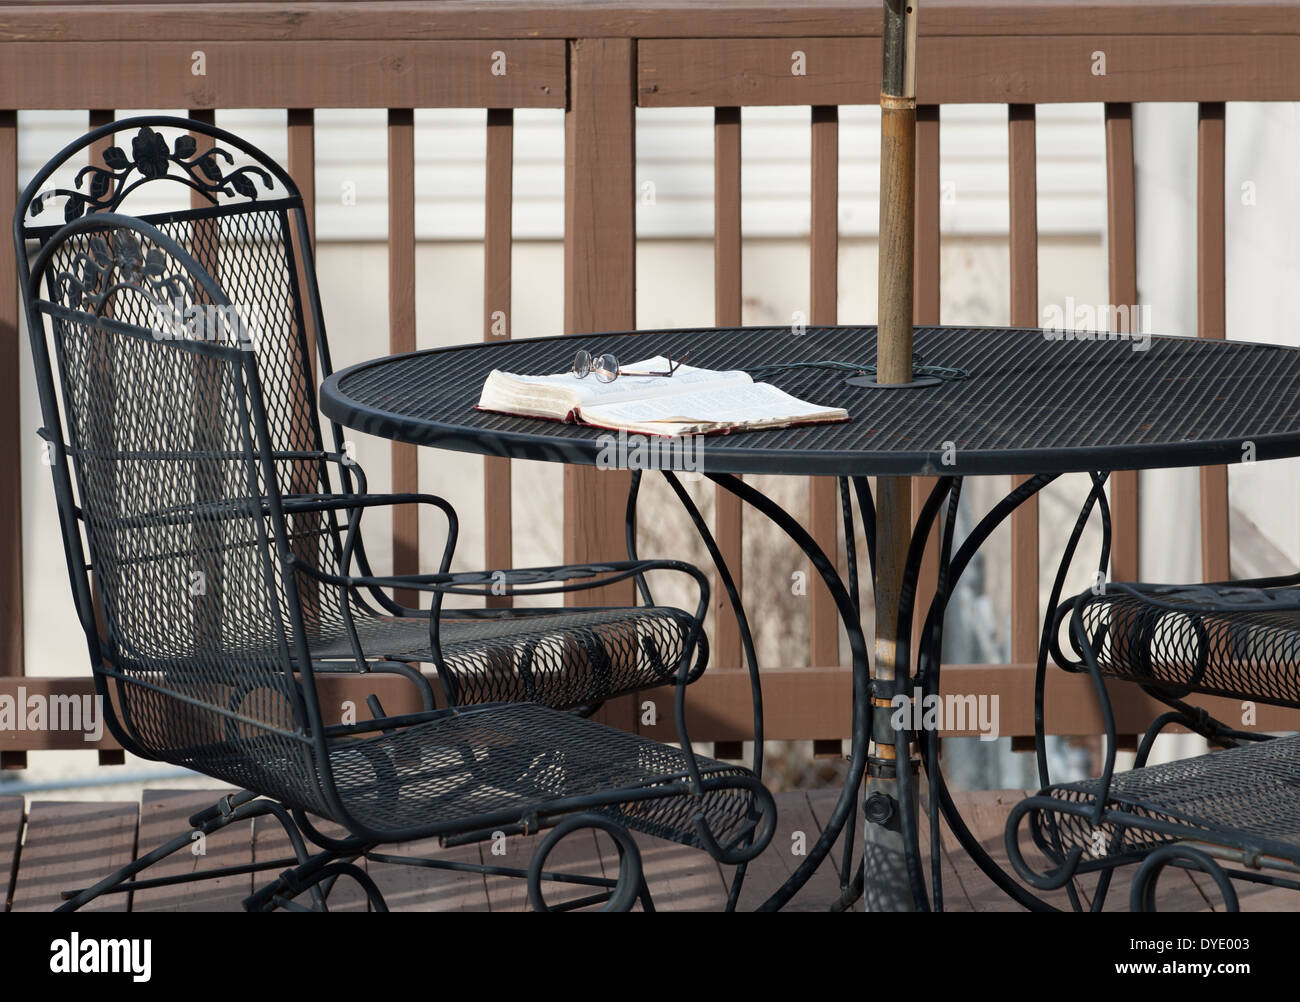 Un paio di occhiali per leggere si trova sulla parte superiore di una Bibbia aperta la posa su un ferro battuto tavolo su un ponte di legno con sedie abbinate. Foto Stock